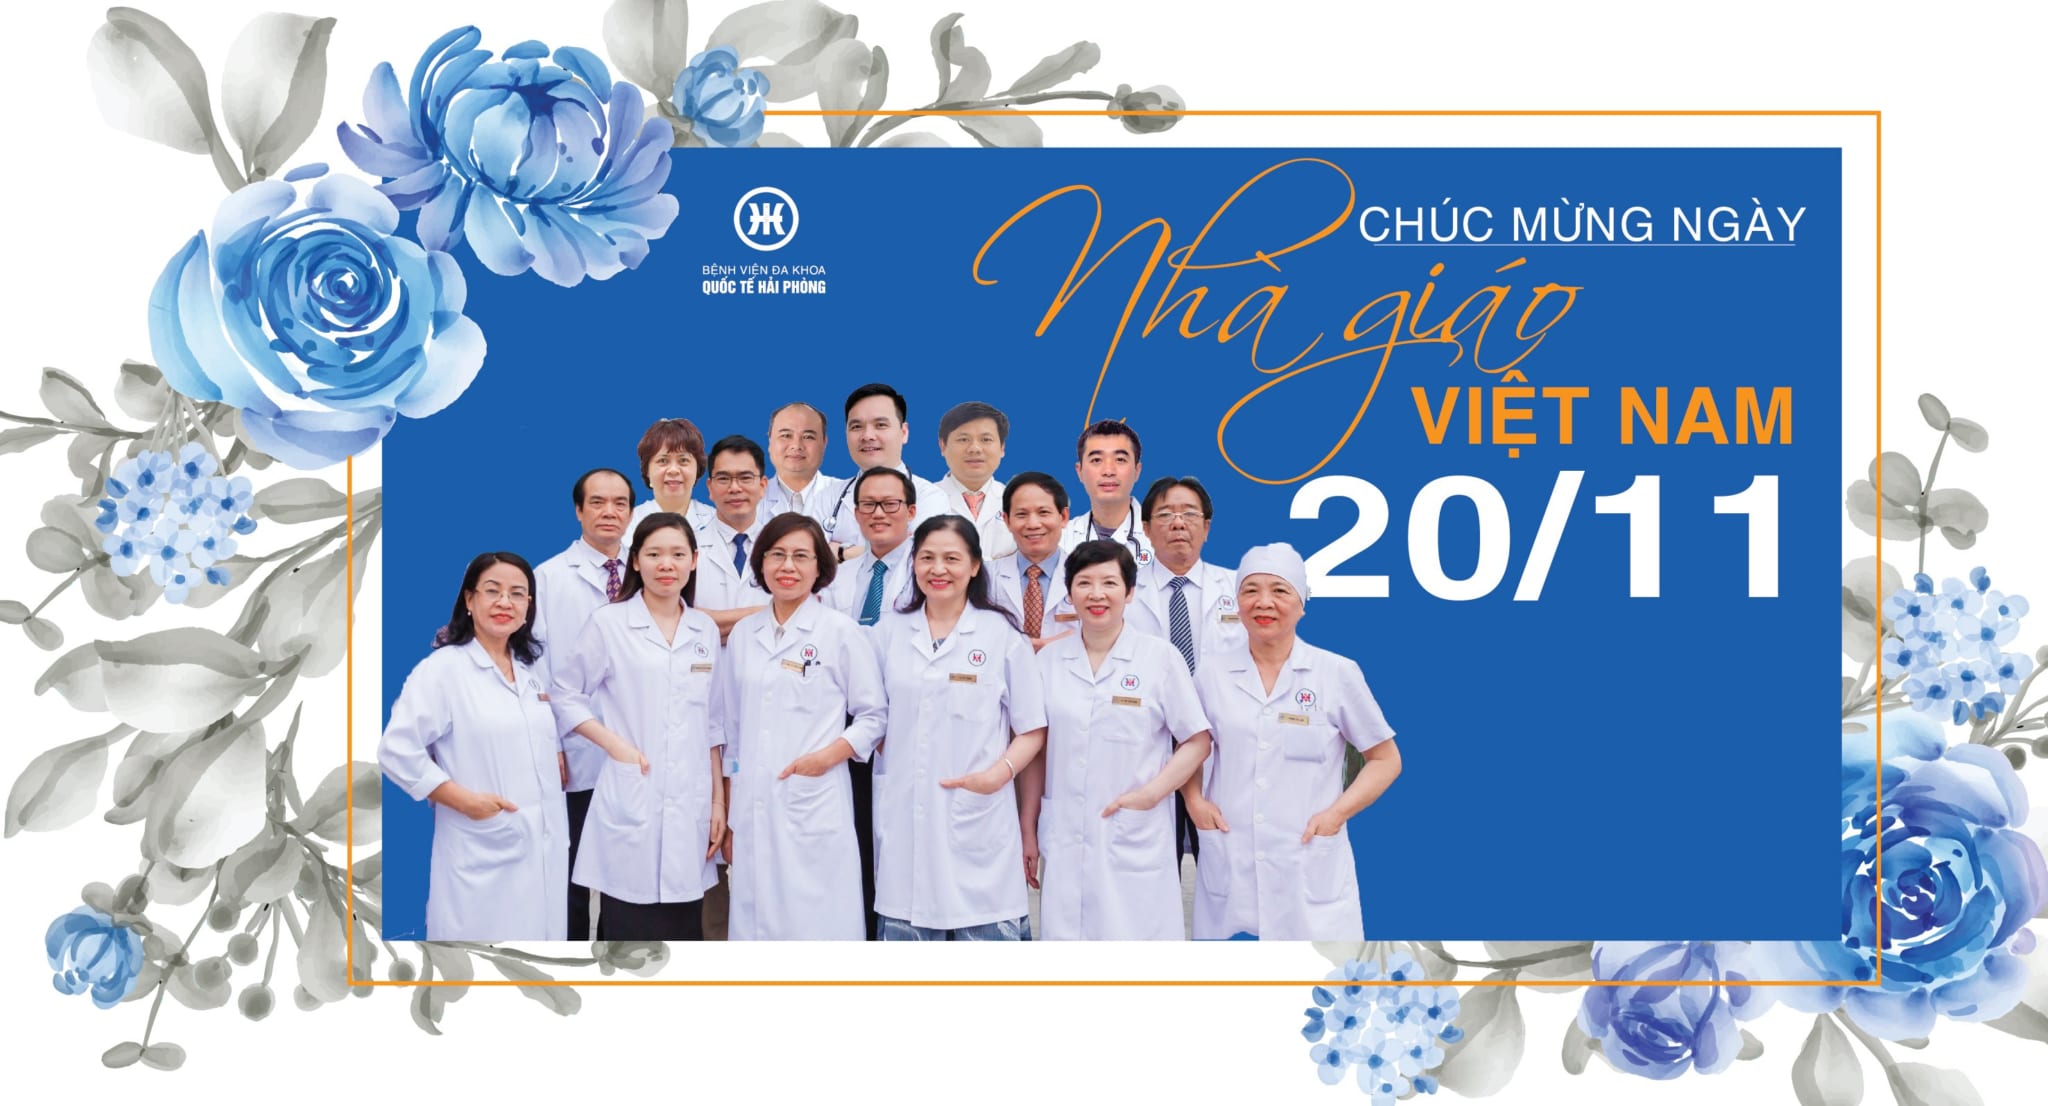 Chúc mừng Ngày Nhà giáo Việt Nam 20/11: Gửi lời tri ân đến thầy cô giáo -  Người thầy thuốc đáng kính của nhân dân 